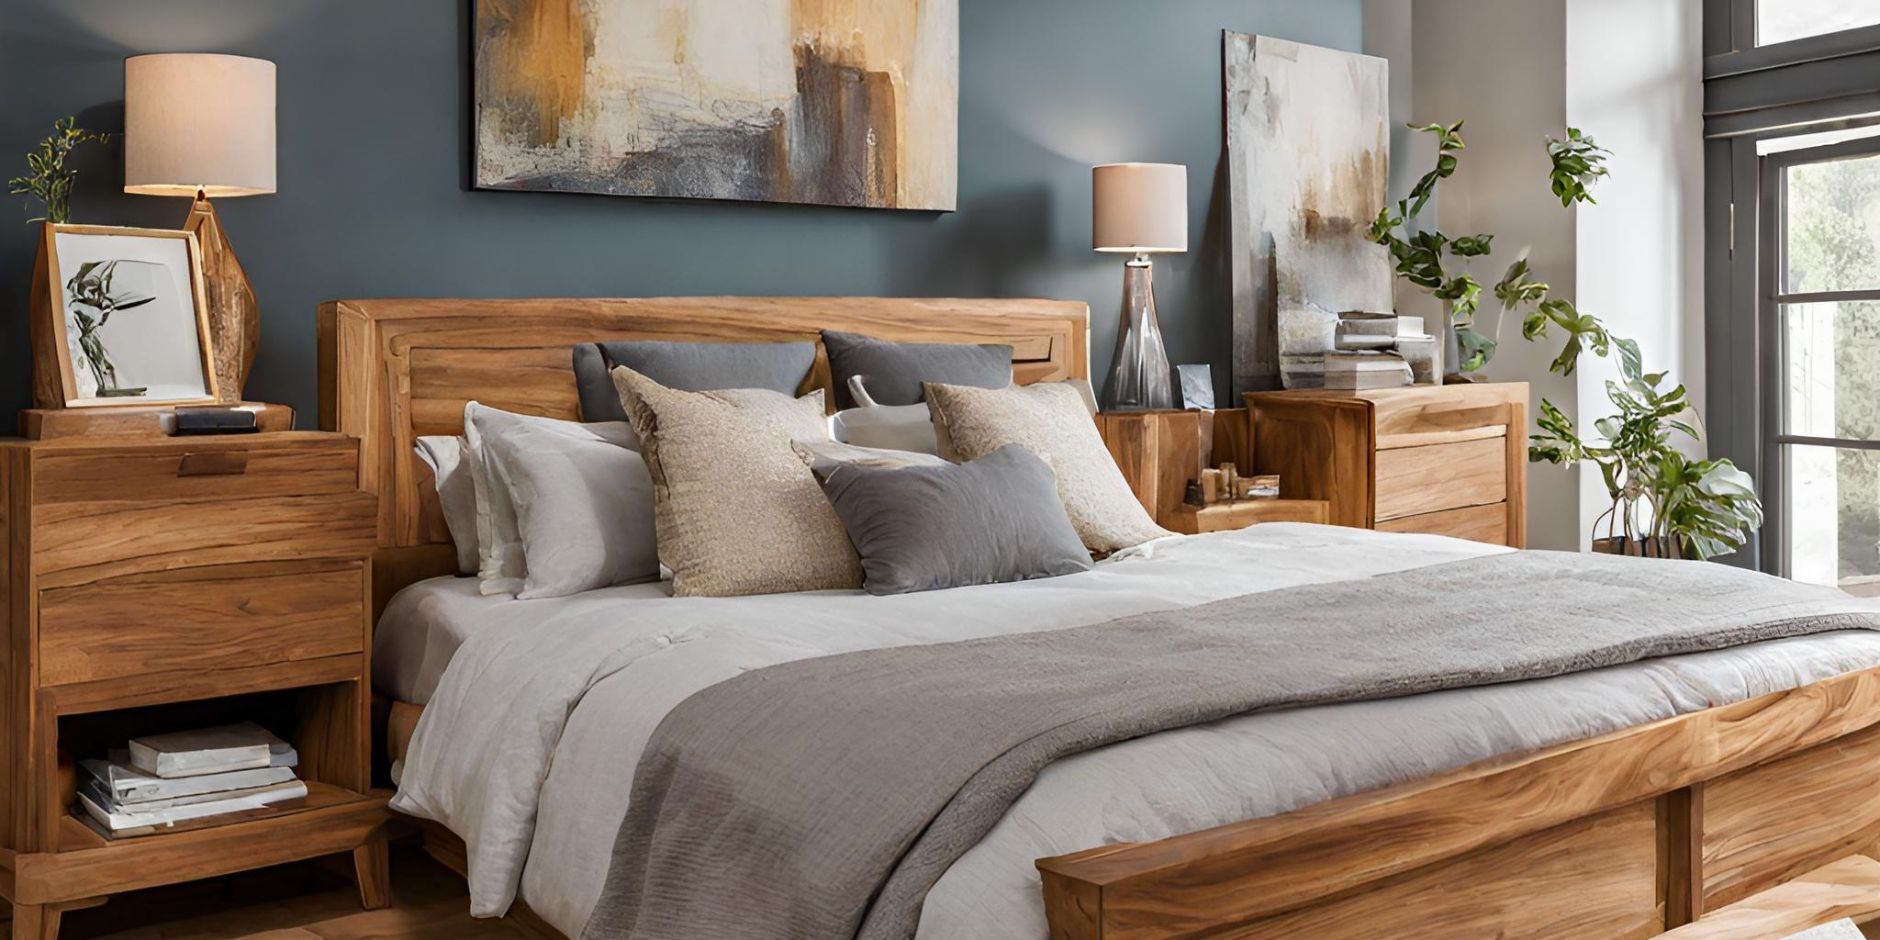 Masívny nábytok v spálni. V miestnosti je zobrazená manželská posteľ z masívu, masívna komoda a dva drevené nočné stolíky